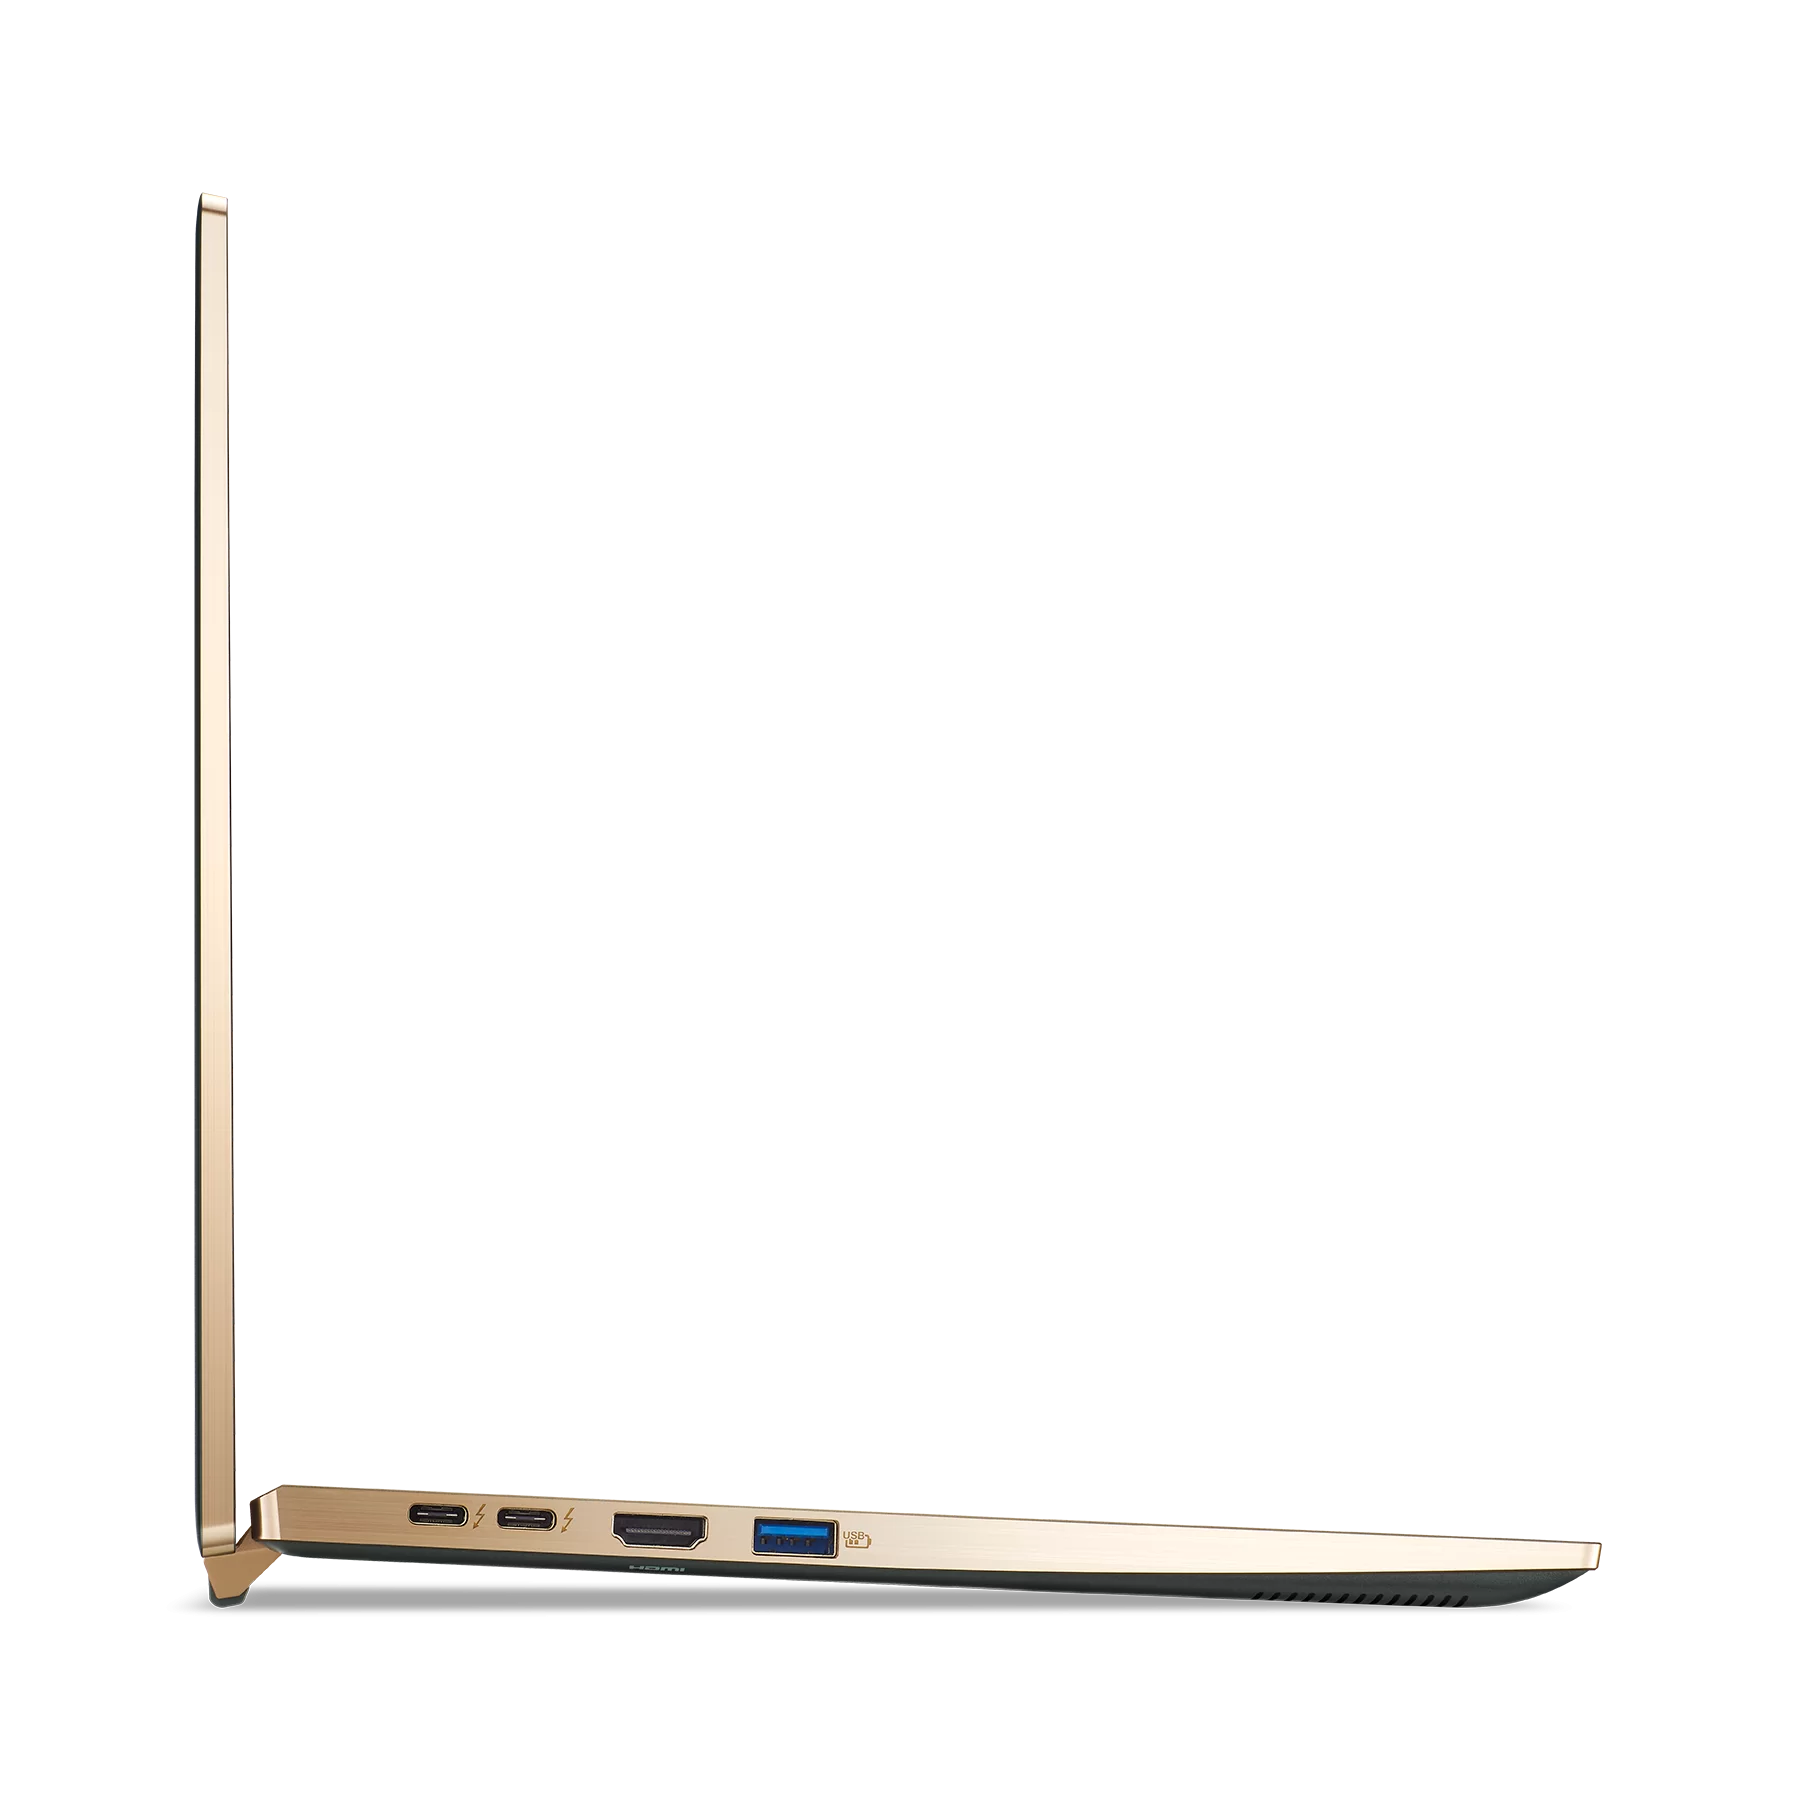 Acer, tasarım ödüllü dizüstü bilgisayarı yeni Swift 5'i duyurdu